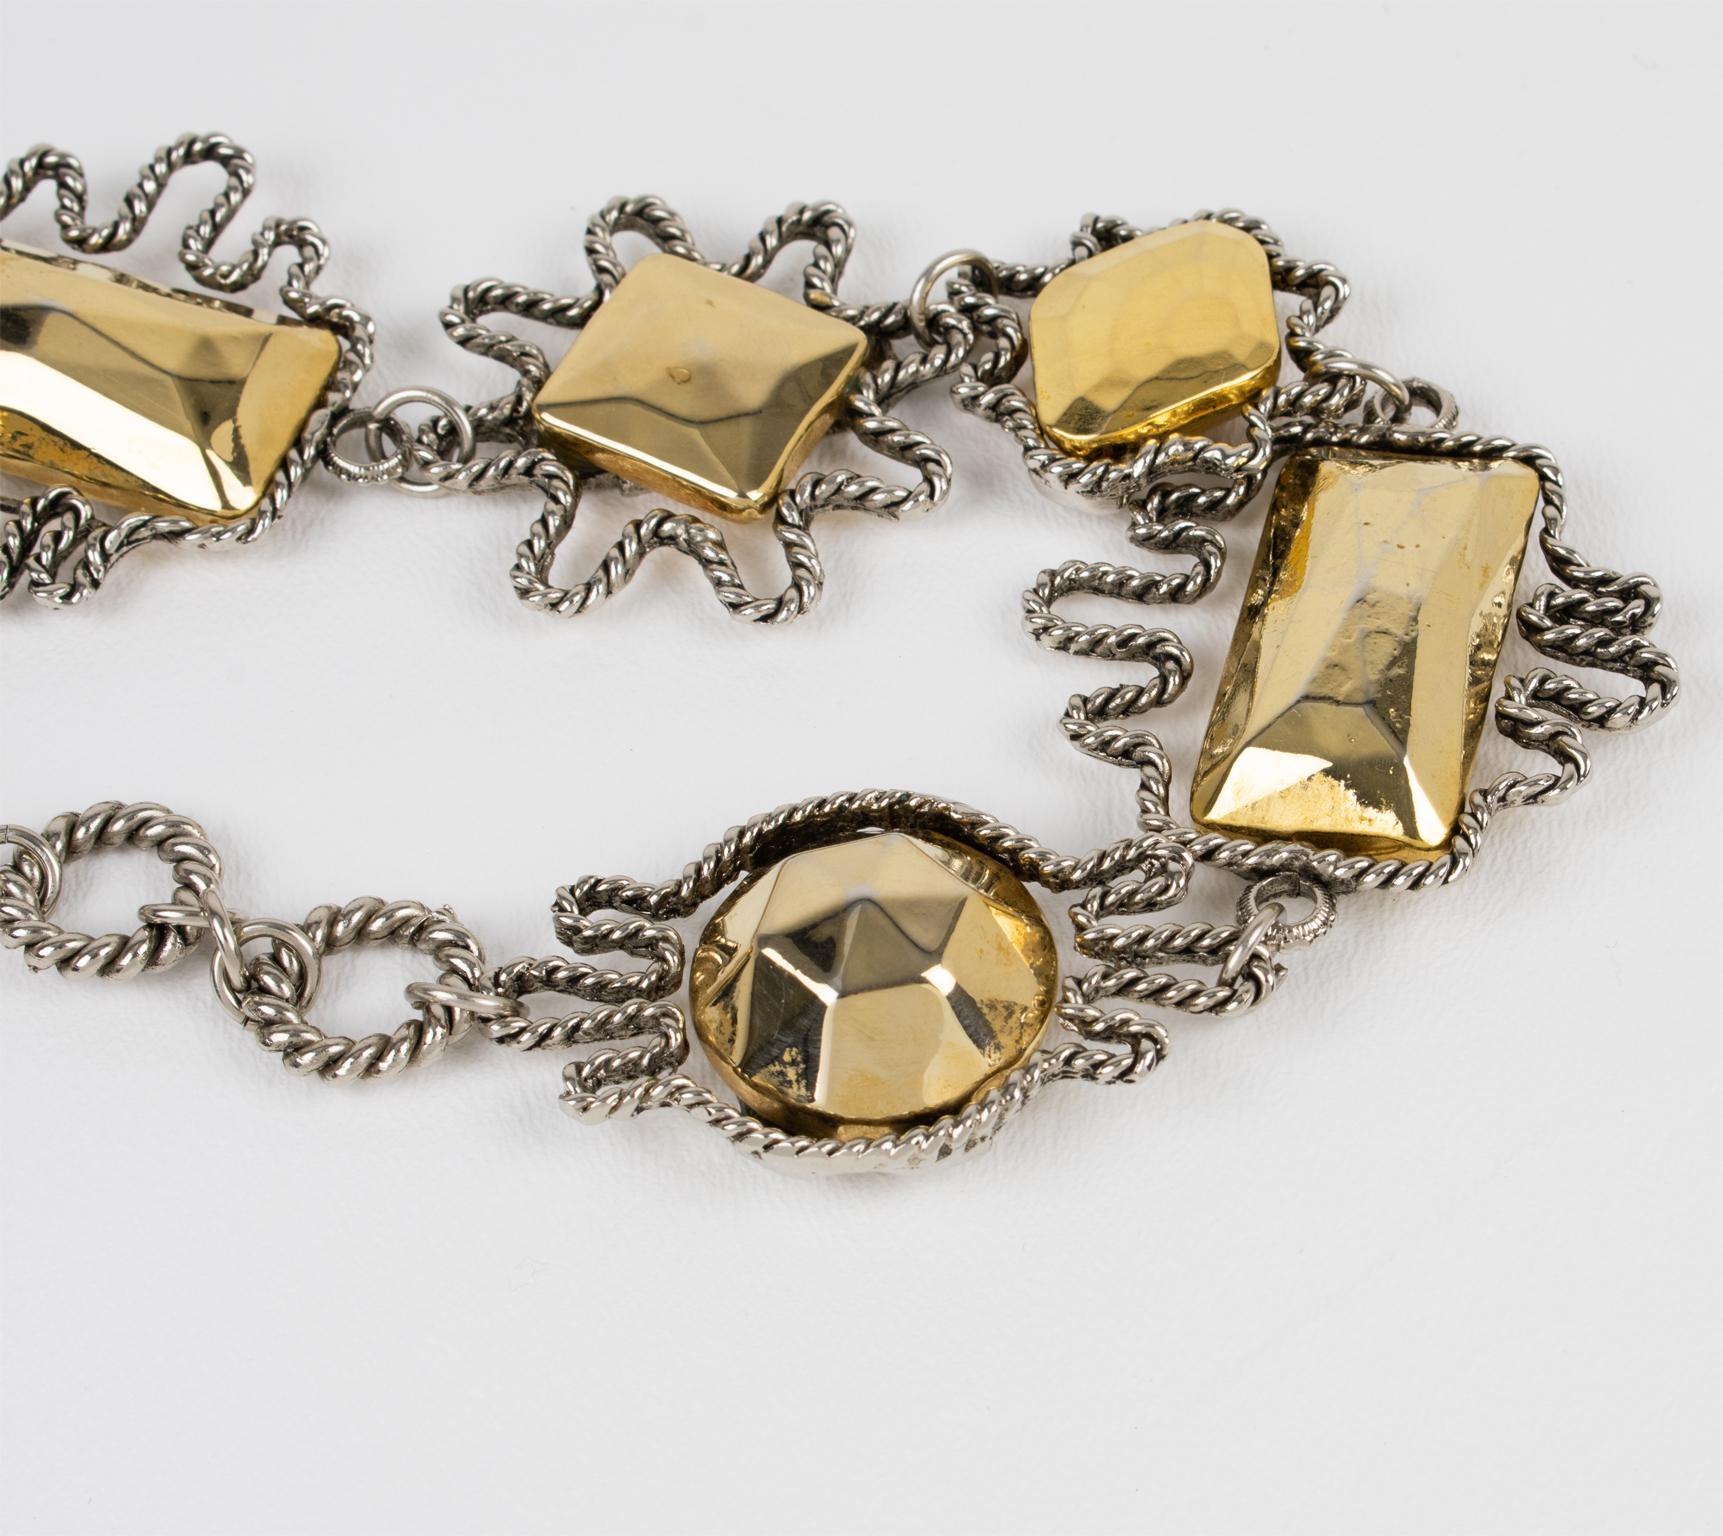 Alexis Lahellec Paris Massive Gilt Metal and Silver Plate Charm Necklace For Sale 5